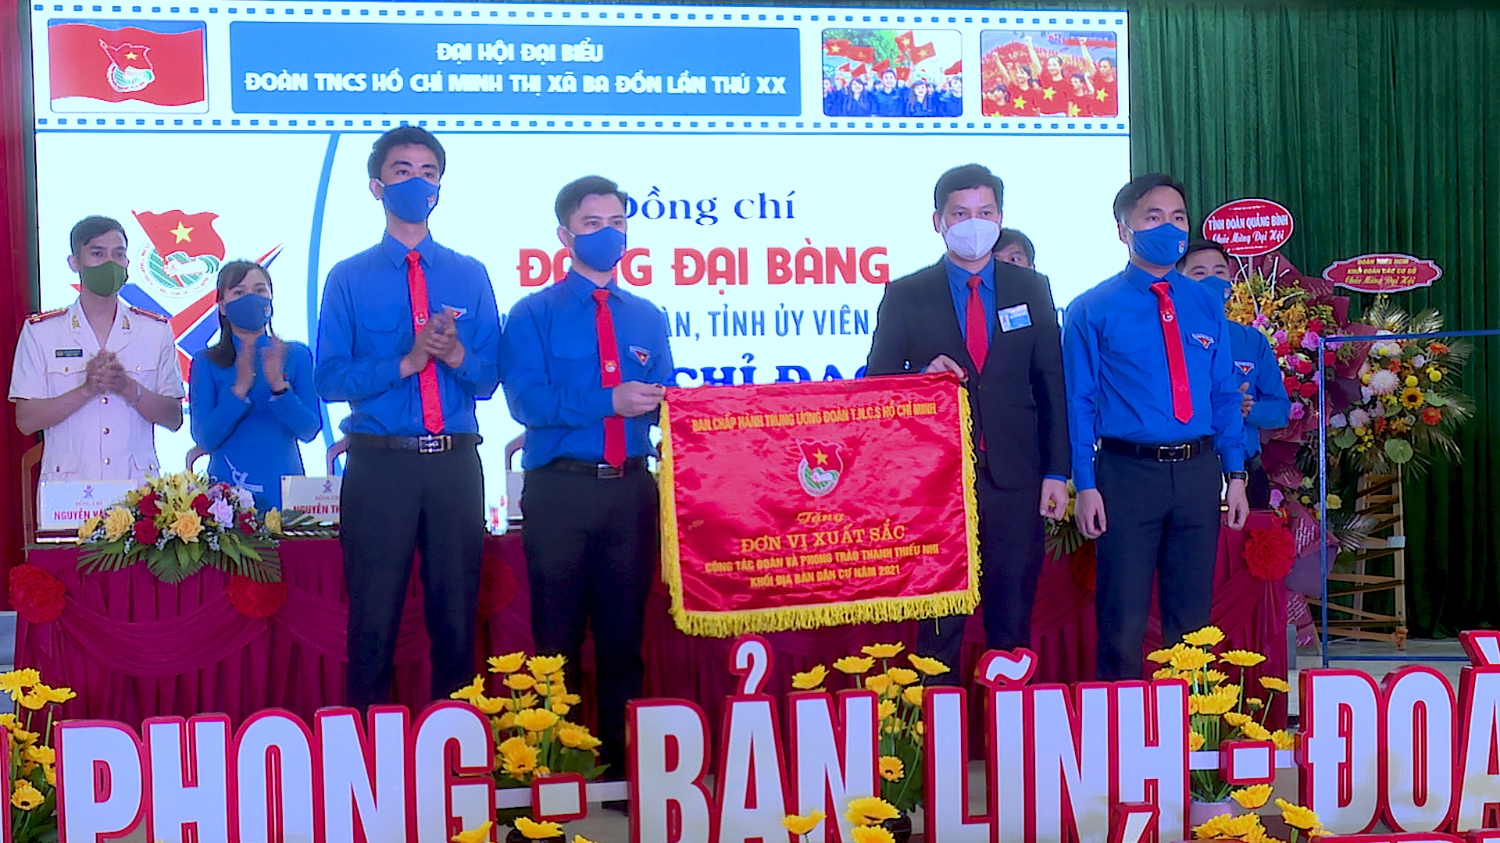 Đồng chí Đặng Đại Bàng Tỉnh ủy viên Bí thư Tỉnh đoàn Quảng Bình tặng cờ thi đua xuất sắc trong công tác Đoàn và phong trào Thanh thiếu nhi năm 2021 cho Thị đoàn Ba Đồn